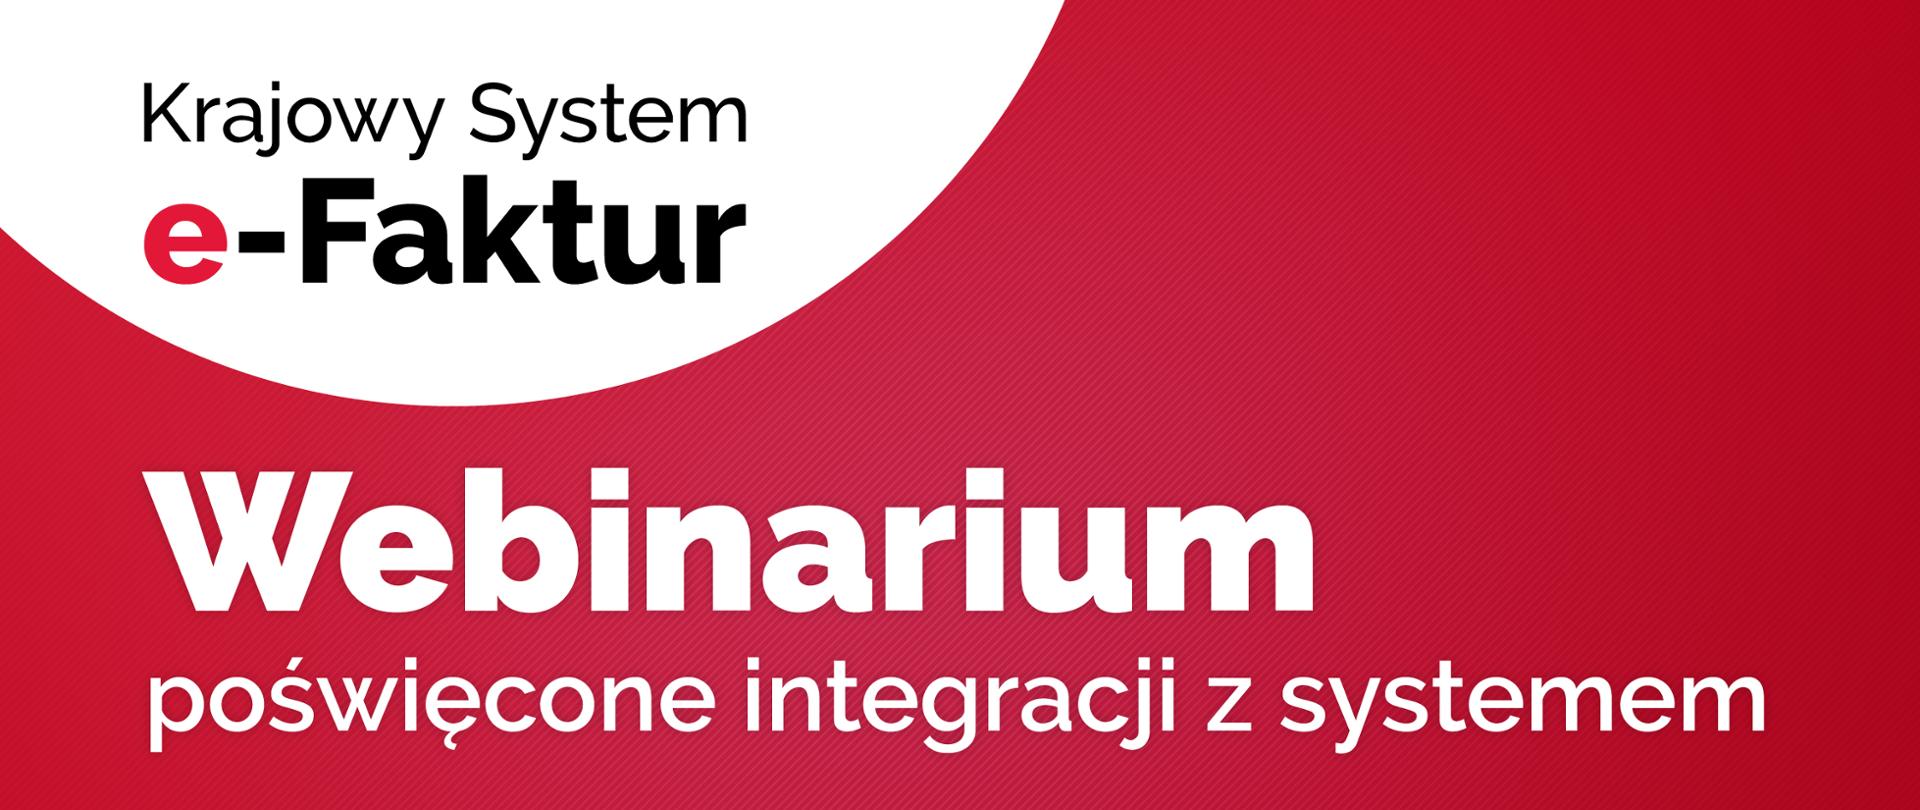 Napis na biało czerwonym tle Krajowy System e-Faktur Webinarium poświęcone integracji z systemem